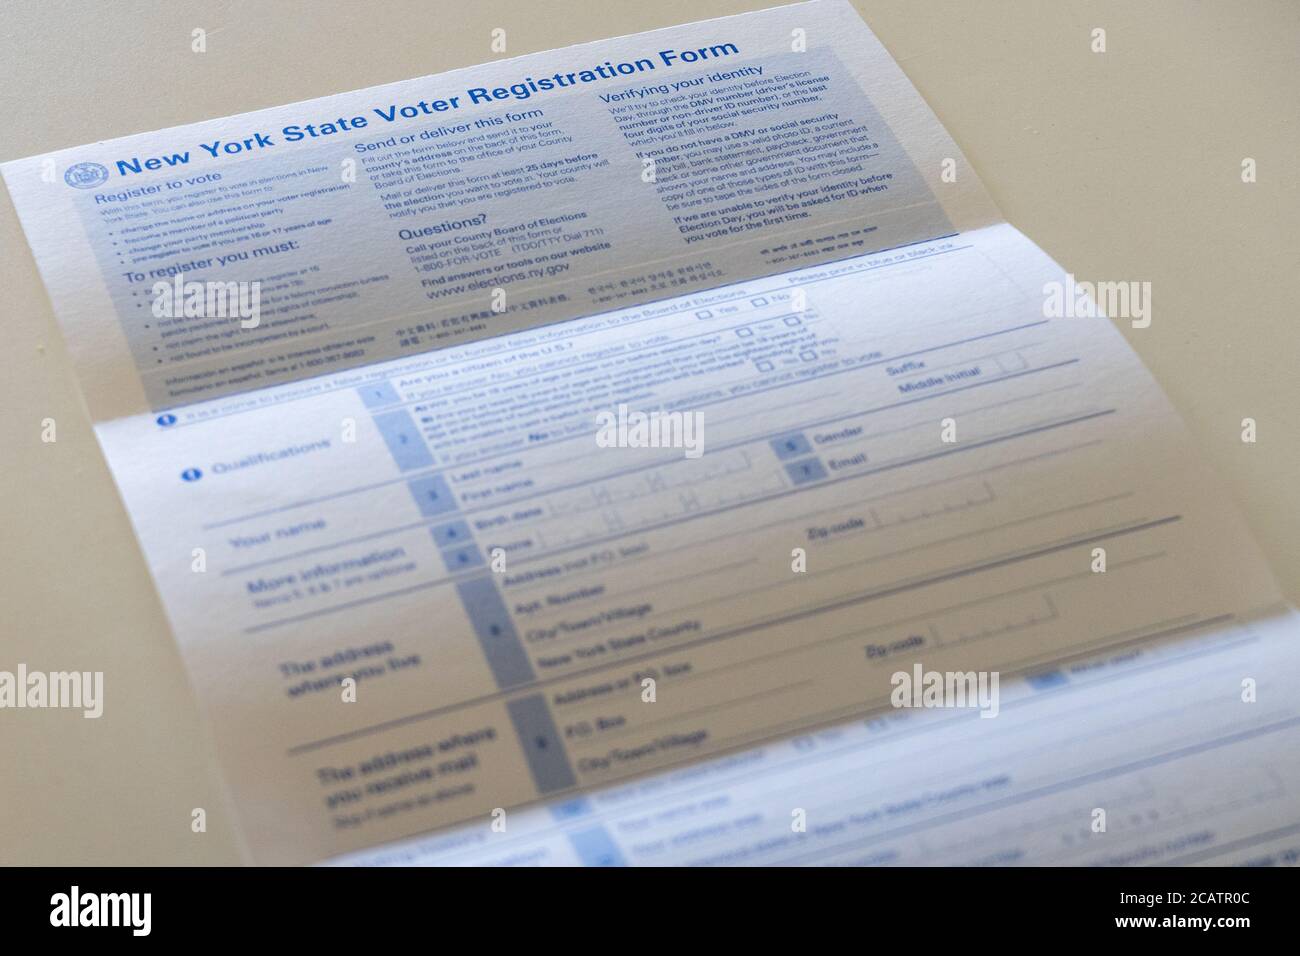 NEW YORK, NY - AGOSTO 08: Modulo di registrazione del New York state Voter visto su questa illustrazione della foto l'8 agosto 2020 a New York City. Foto Stock